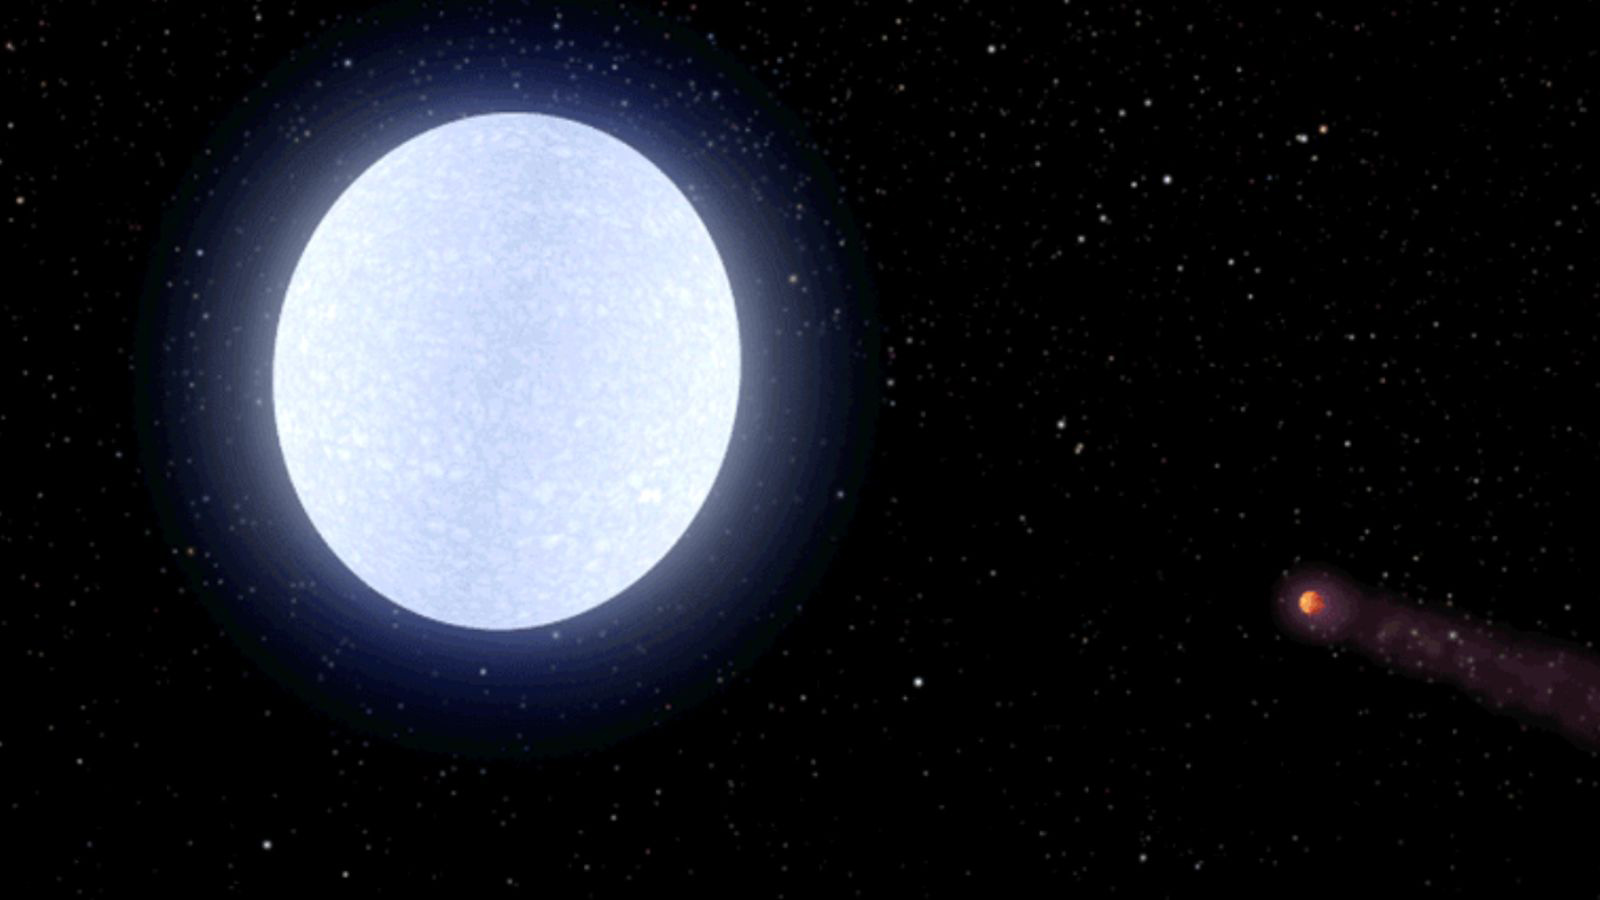 El astro órbita a 650 años luz de la Tierra y posee un temperatura máxima de 4.300 ºC